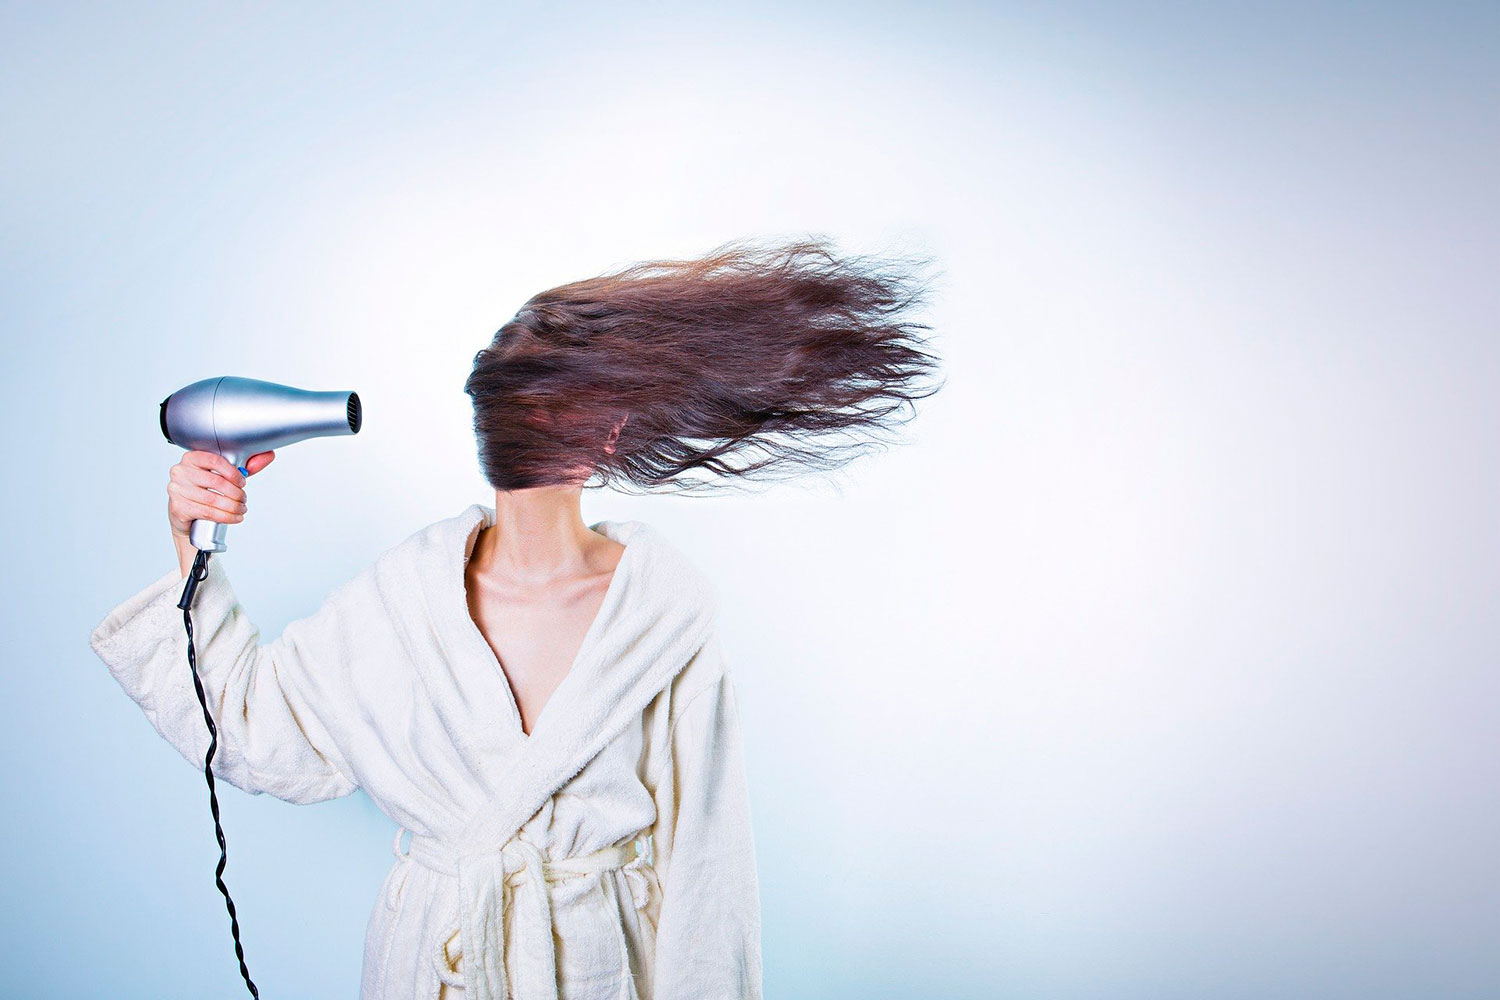 Secador de cabelo cospe fogo em primeiro uso e vídeo viraliza